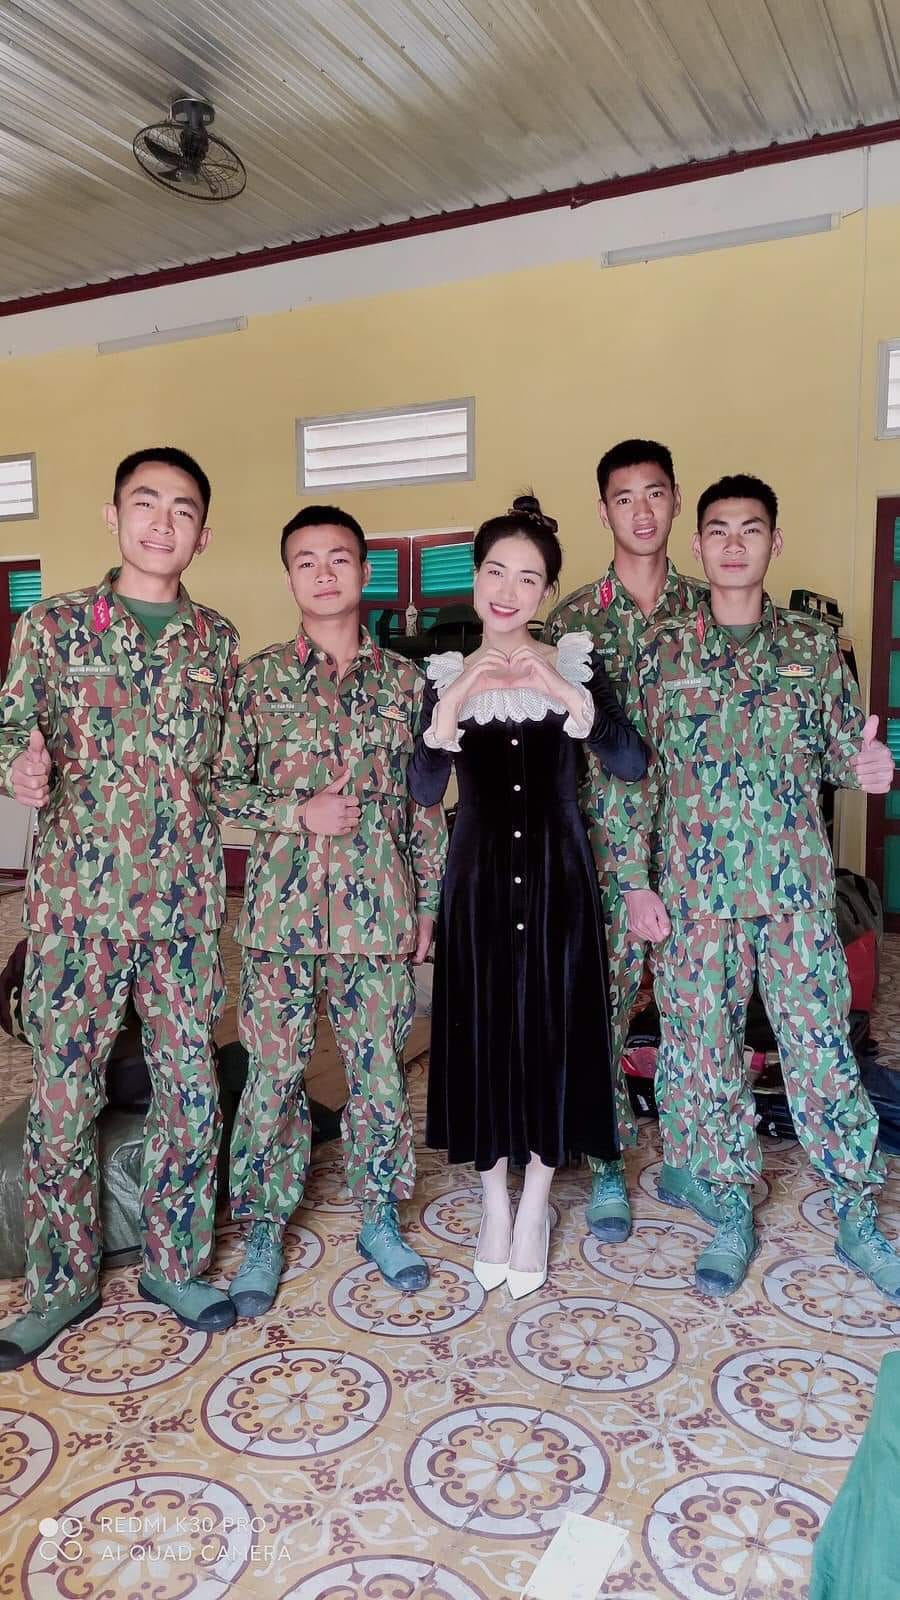 Hình ảnh hiếm của Hoà Minzy khi tham gia Sao nhập ngũ, đứng giữa dàn quân nhân điển trai